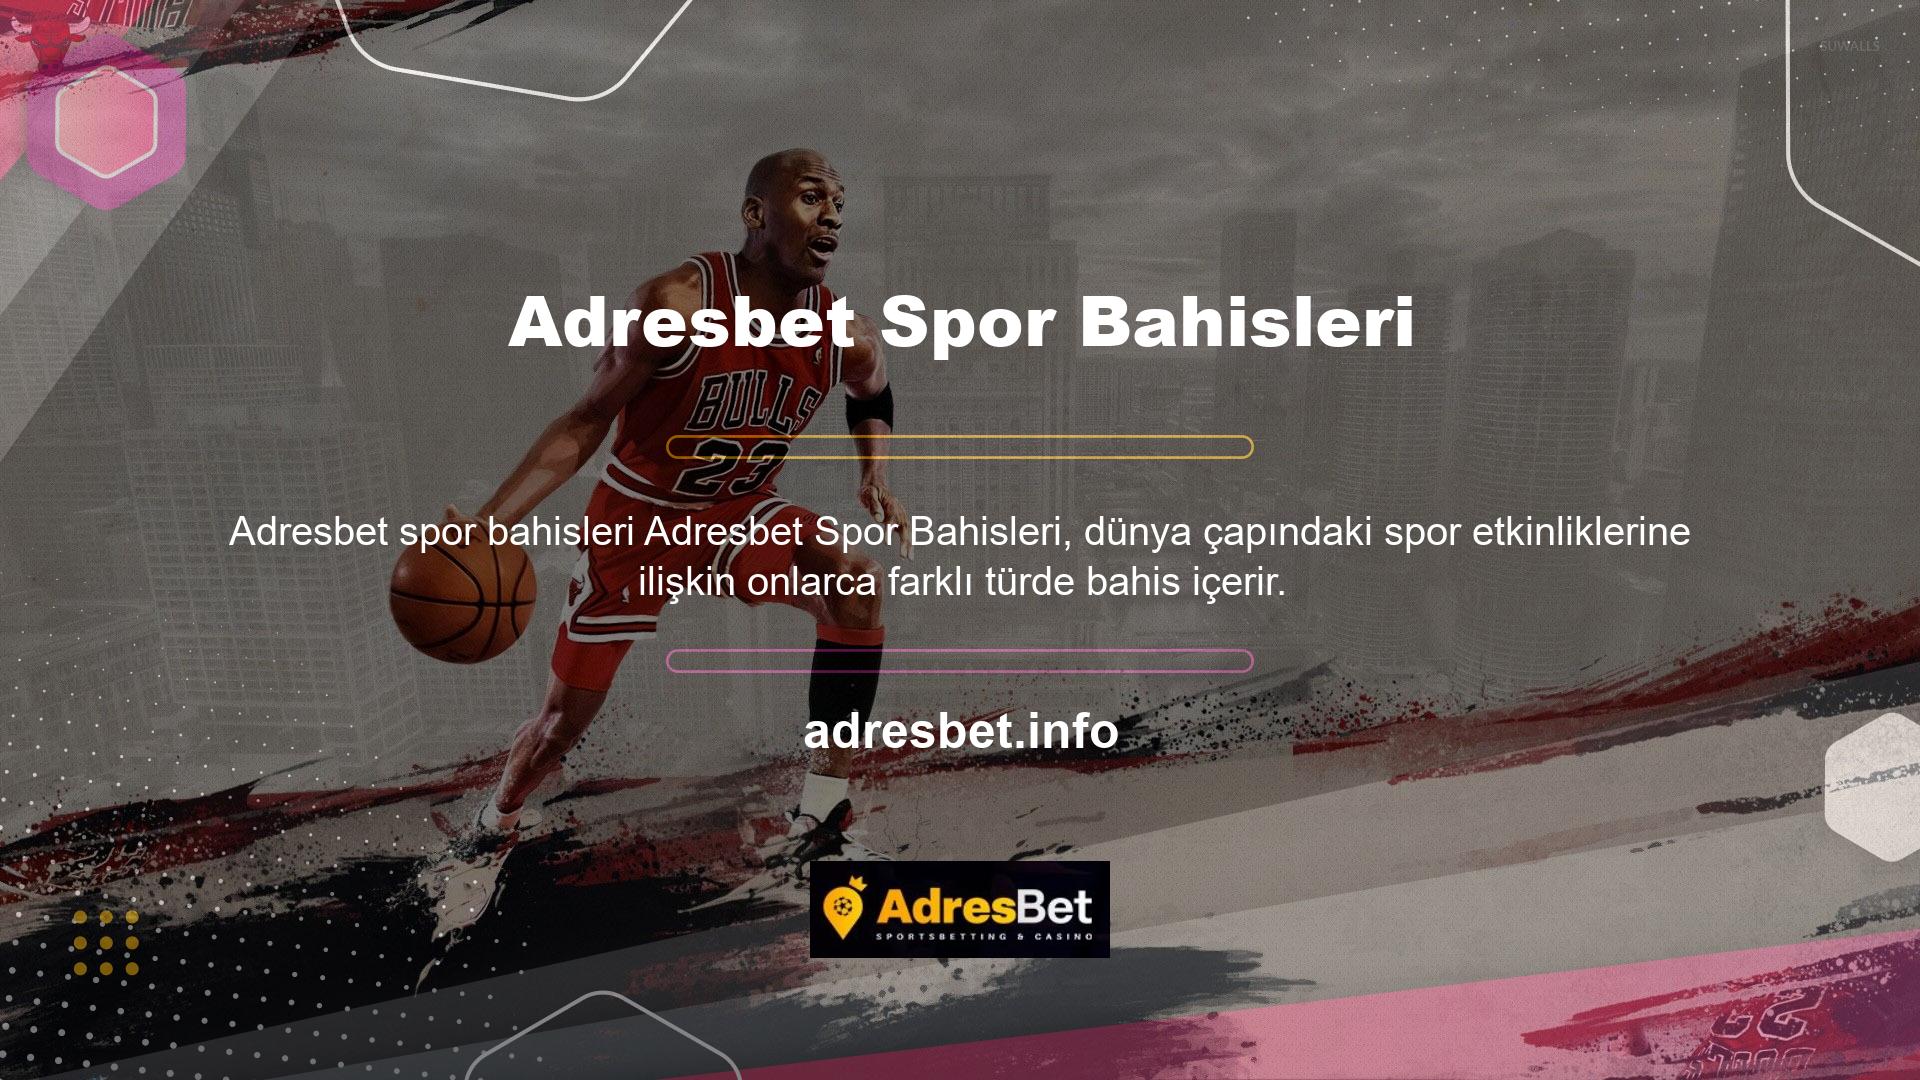 Adresbet, farklı spor etkinliklerine farklı bahis türleri içerir ve maç öncesi ve canlı bahis fırsatları sunar